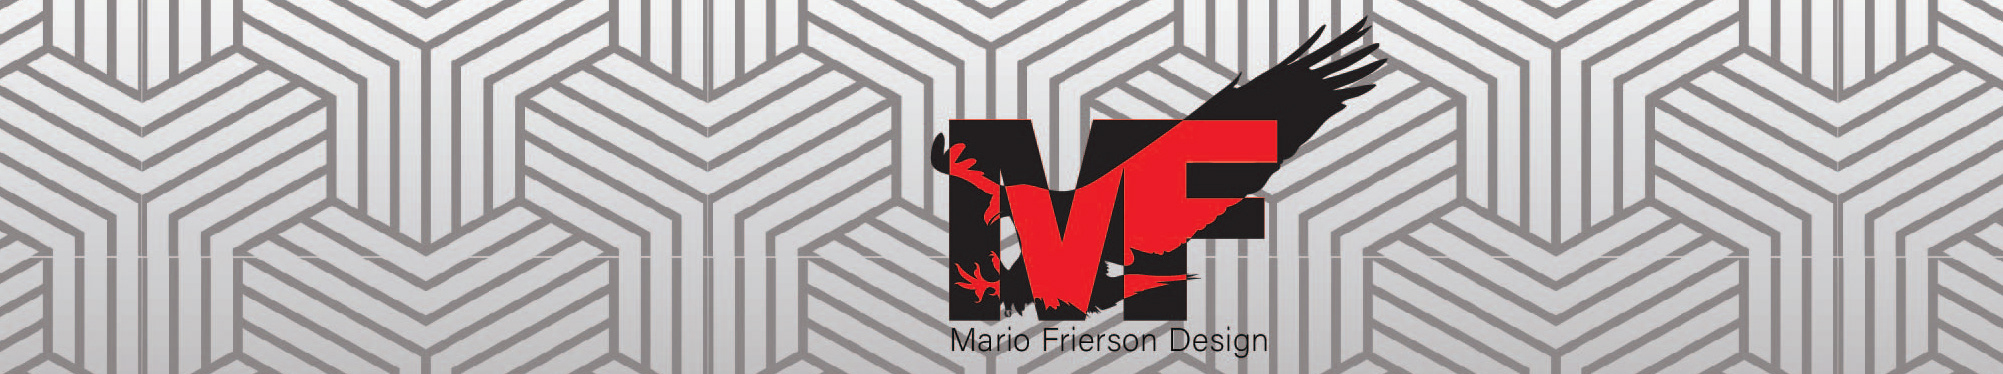 Mario Frierson's profile banner